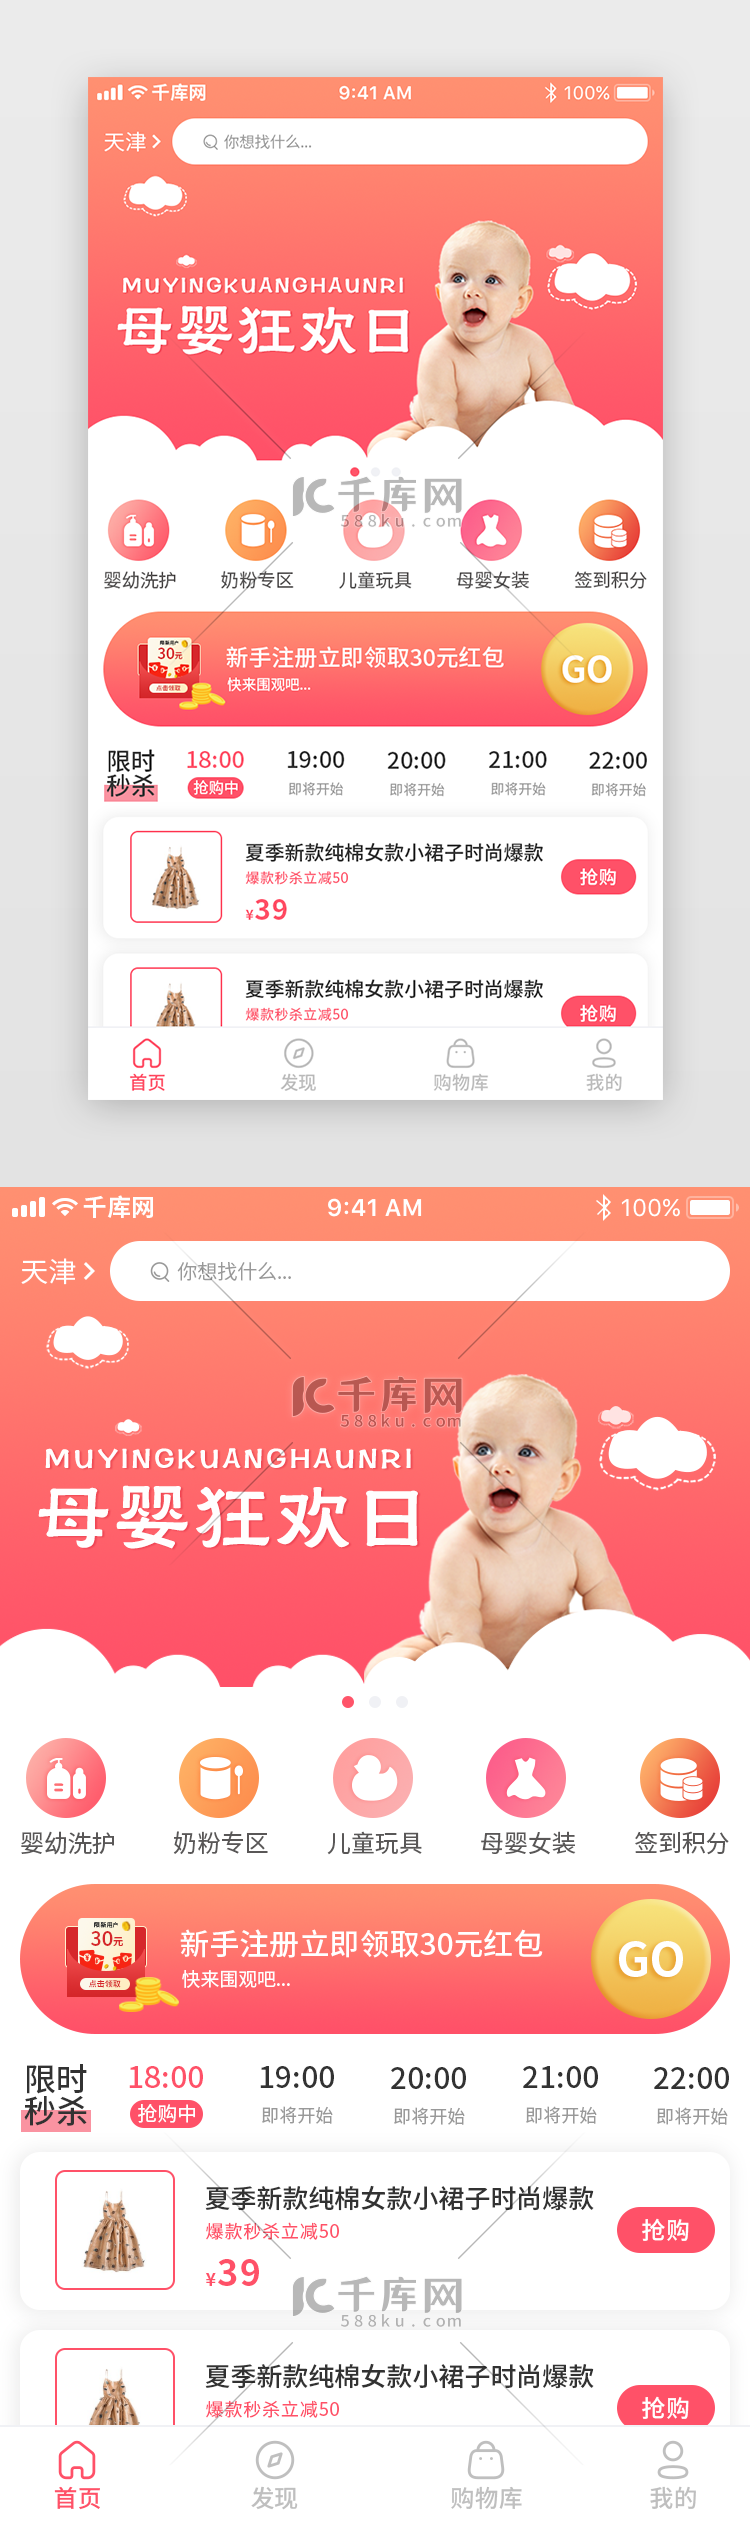 红色系母婴app首页主页简约渐变